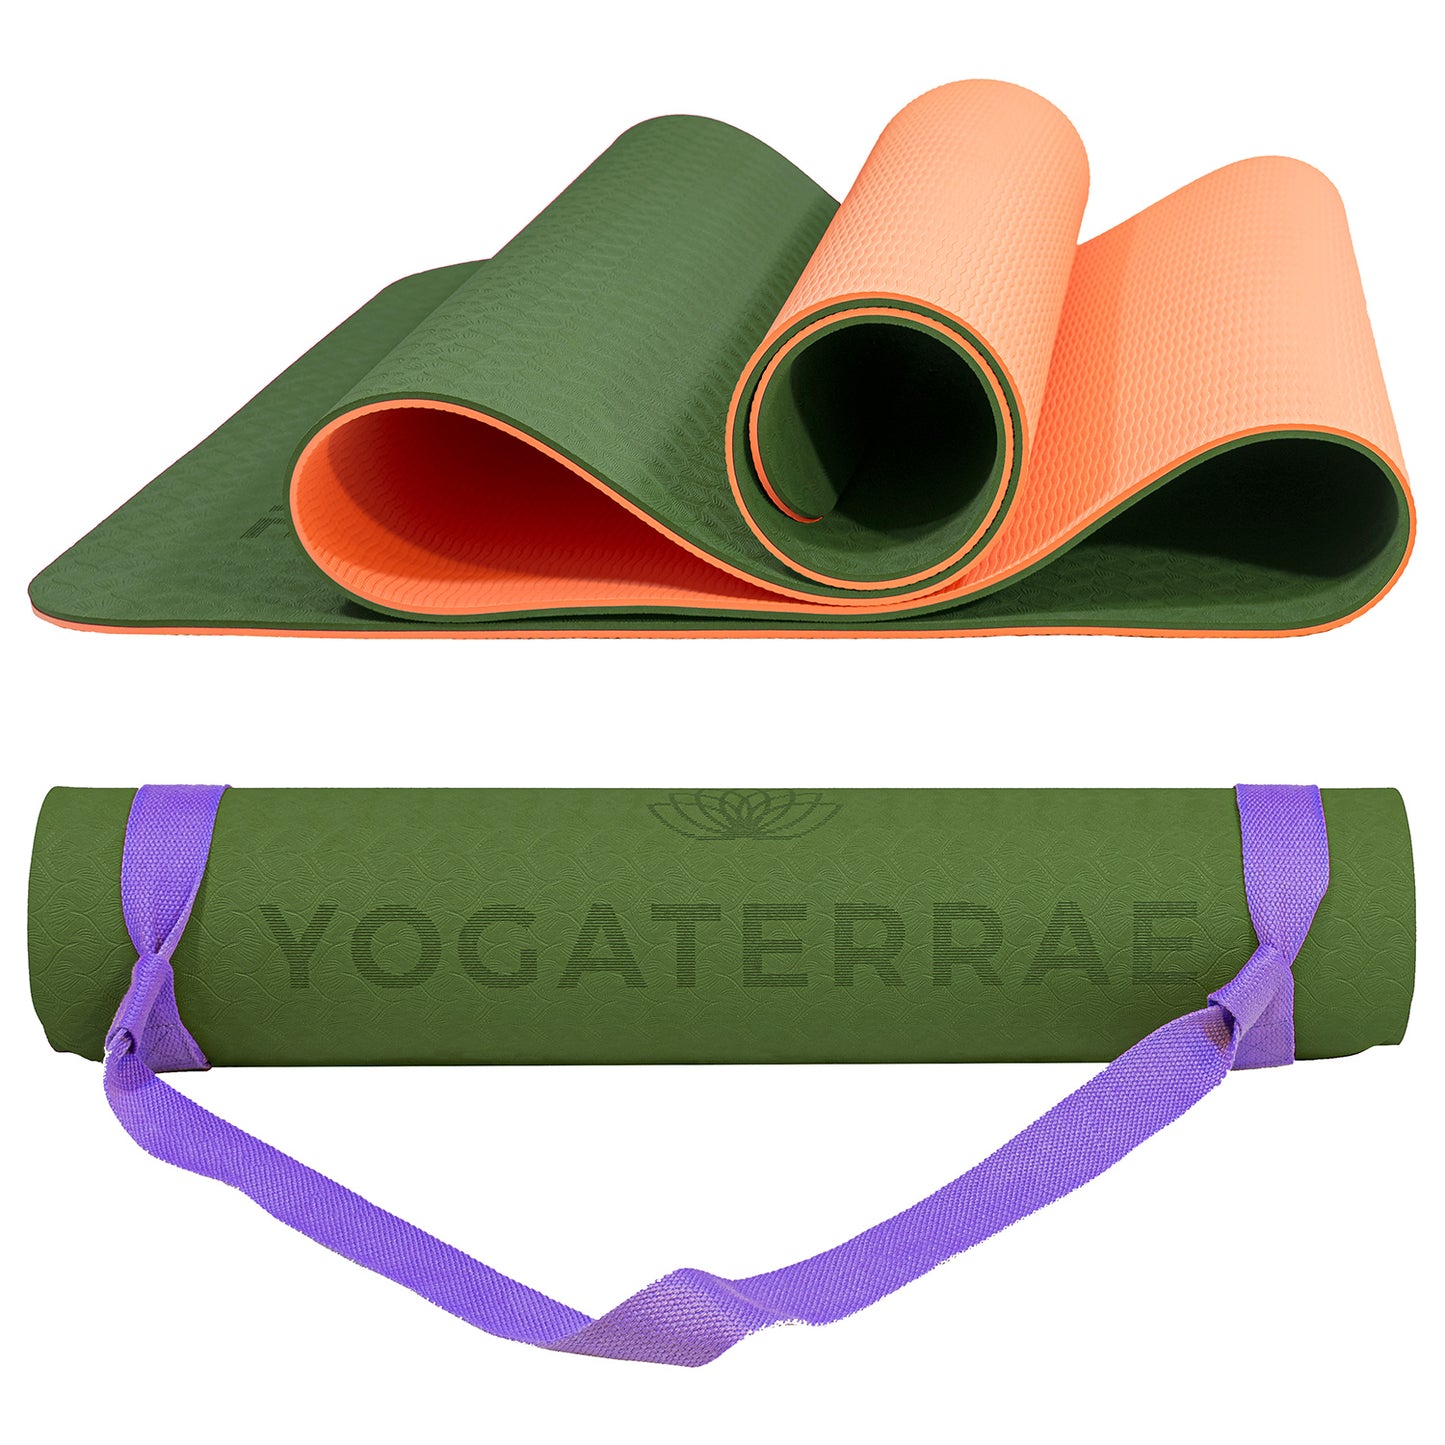 Les avantages du tapis de yoga épais